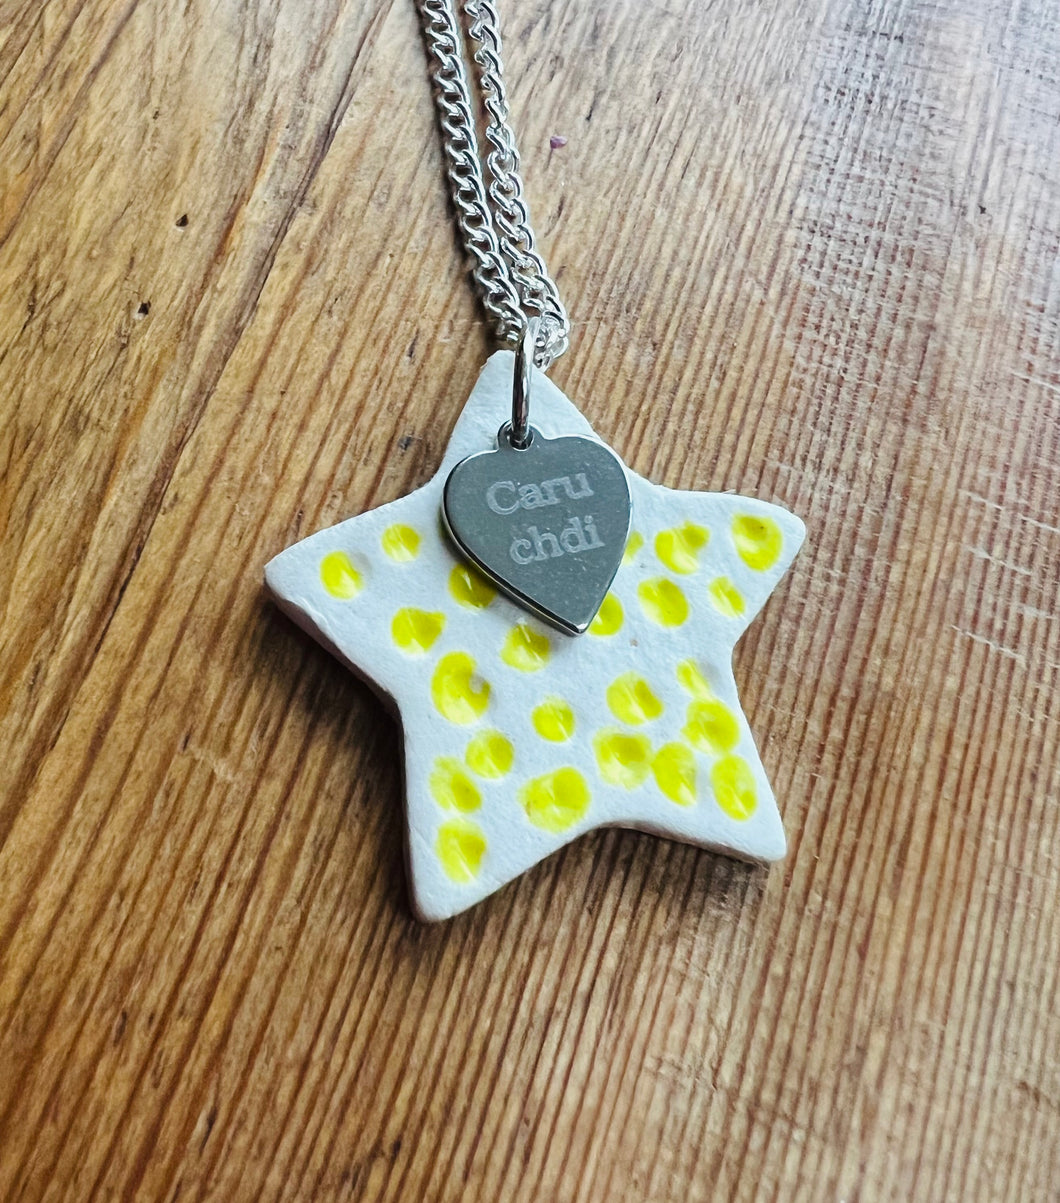 Mwclis seren melyn Caru Chdi / Caru Chdi yellow star necklace